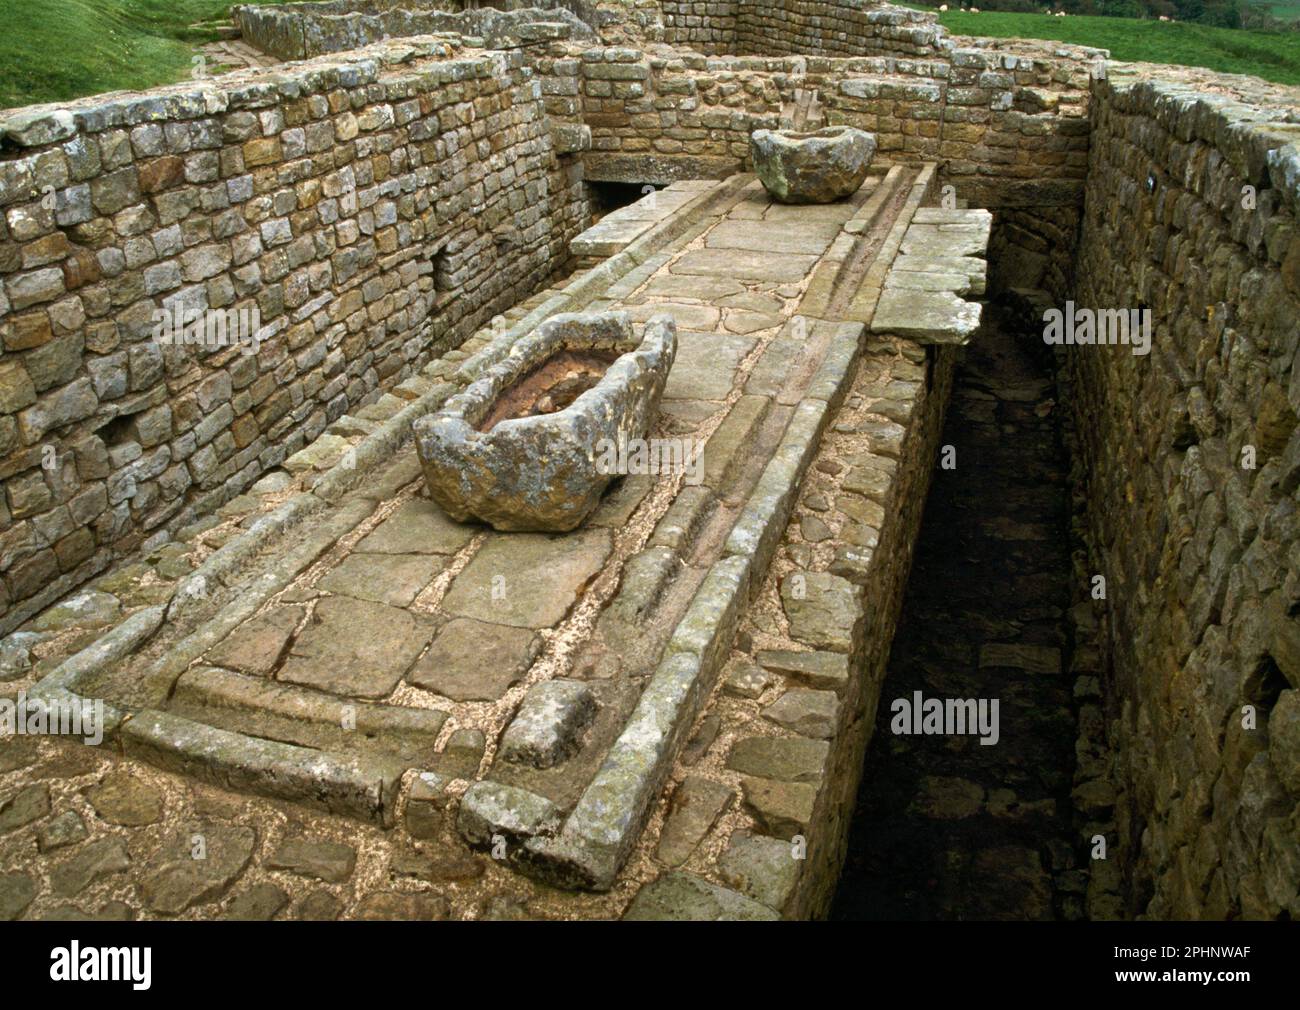 Latrines, chenal d'eau, bassin et drains dans le coin se de Housesteads Roman fort, Hadrien's Wall, Northumberland, Angleterre, Royaume-Uni. Banque D'Images